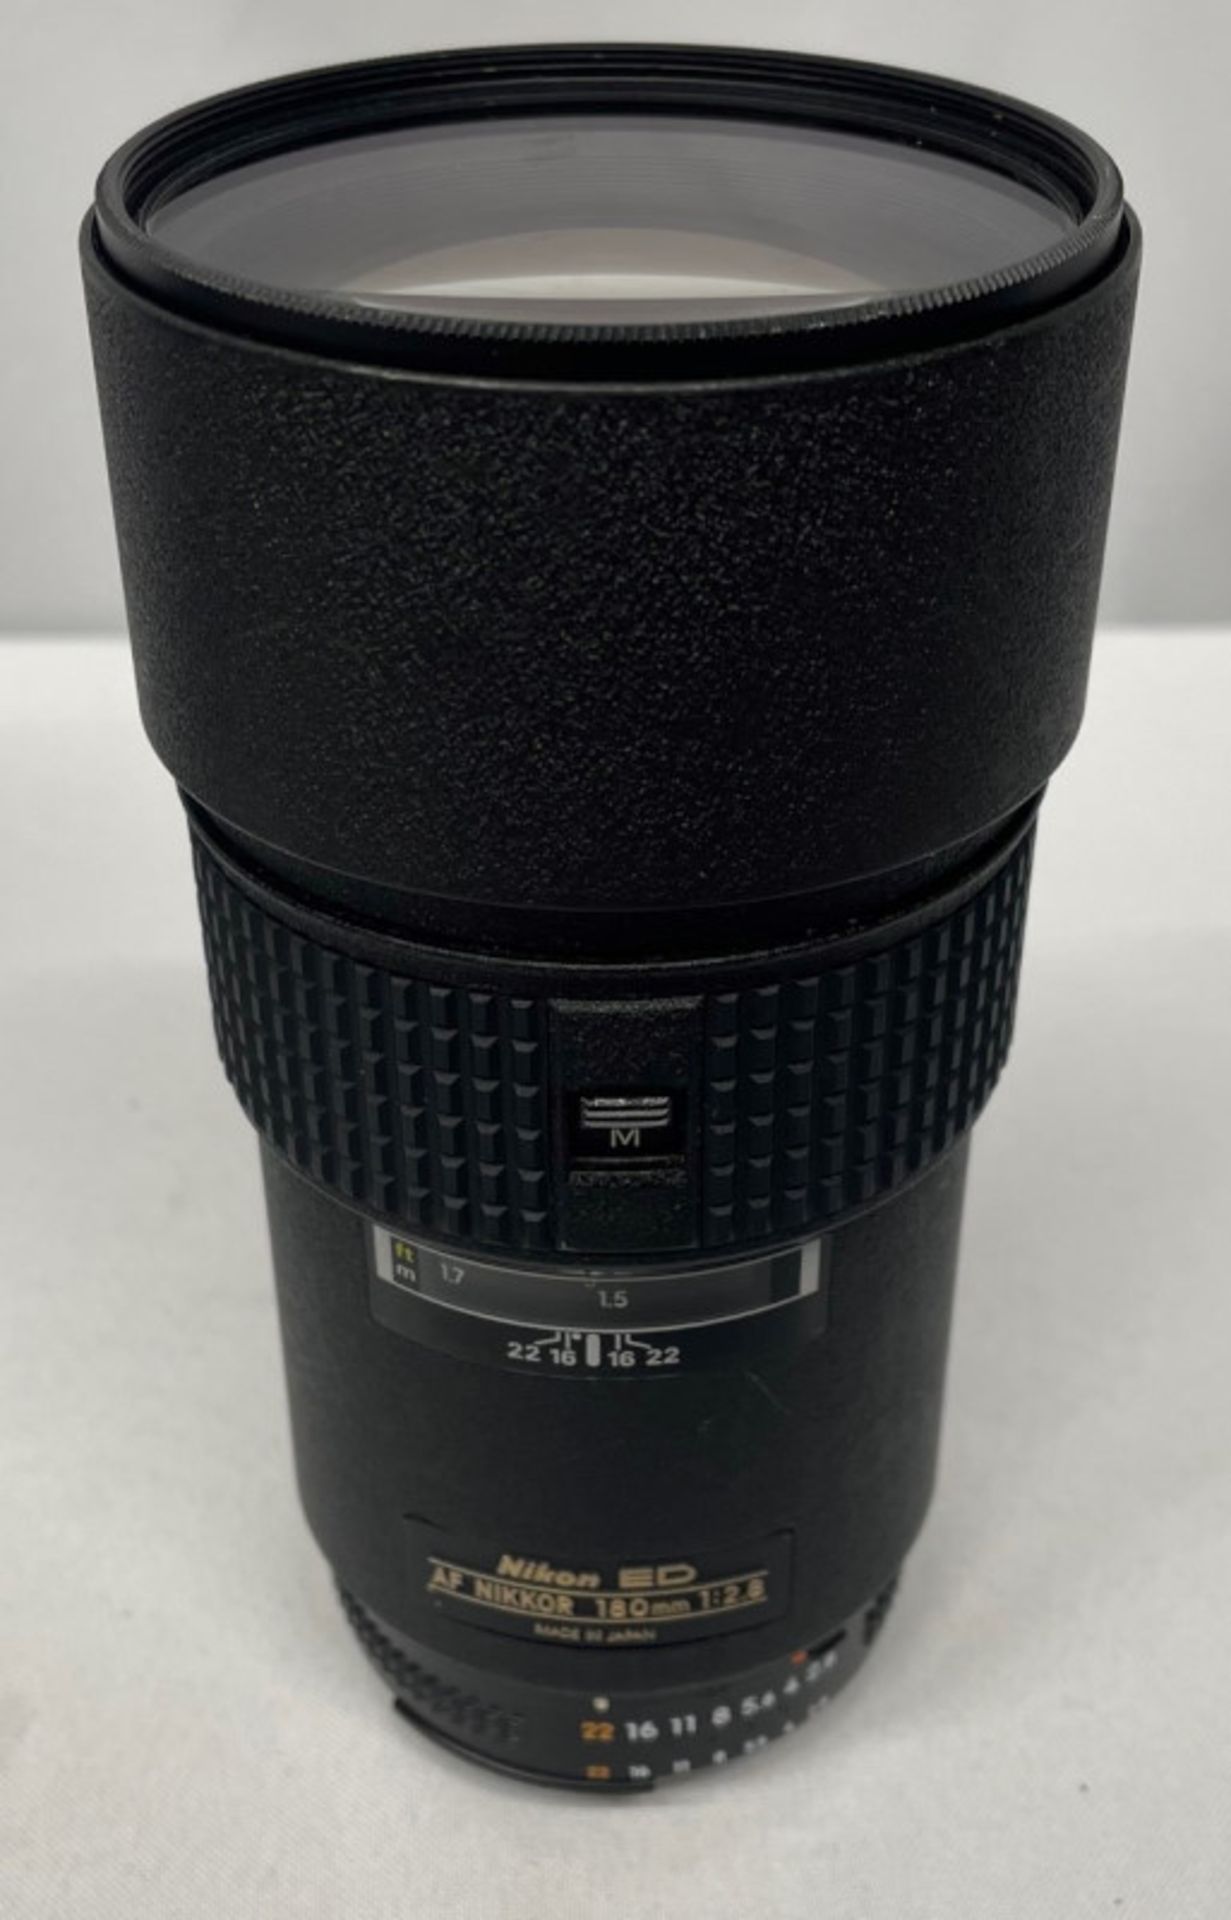 Nikon ED AF Nikkor 180mm - 1:2.8 Lens - Serial No. 273060 with L37c 72mm Filter in Nikon Case - Image 2 of 8